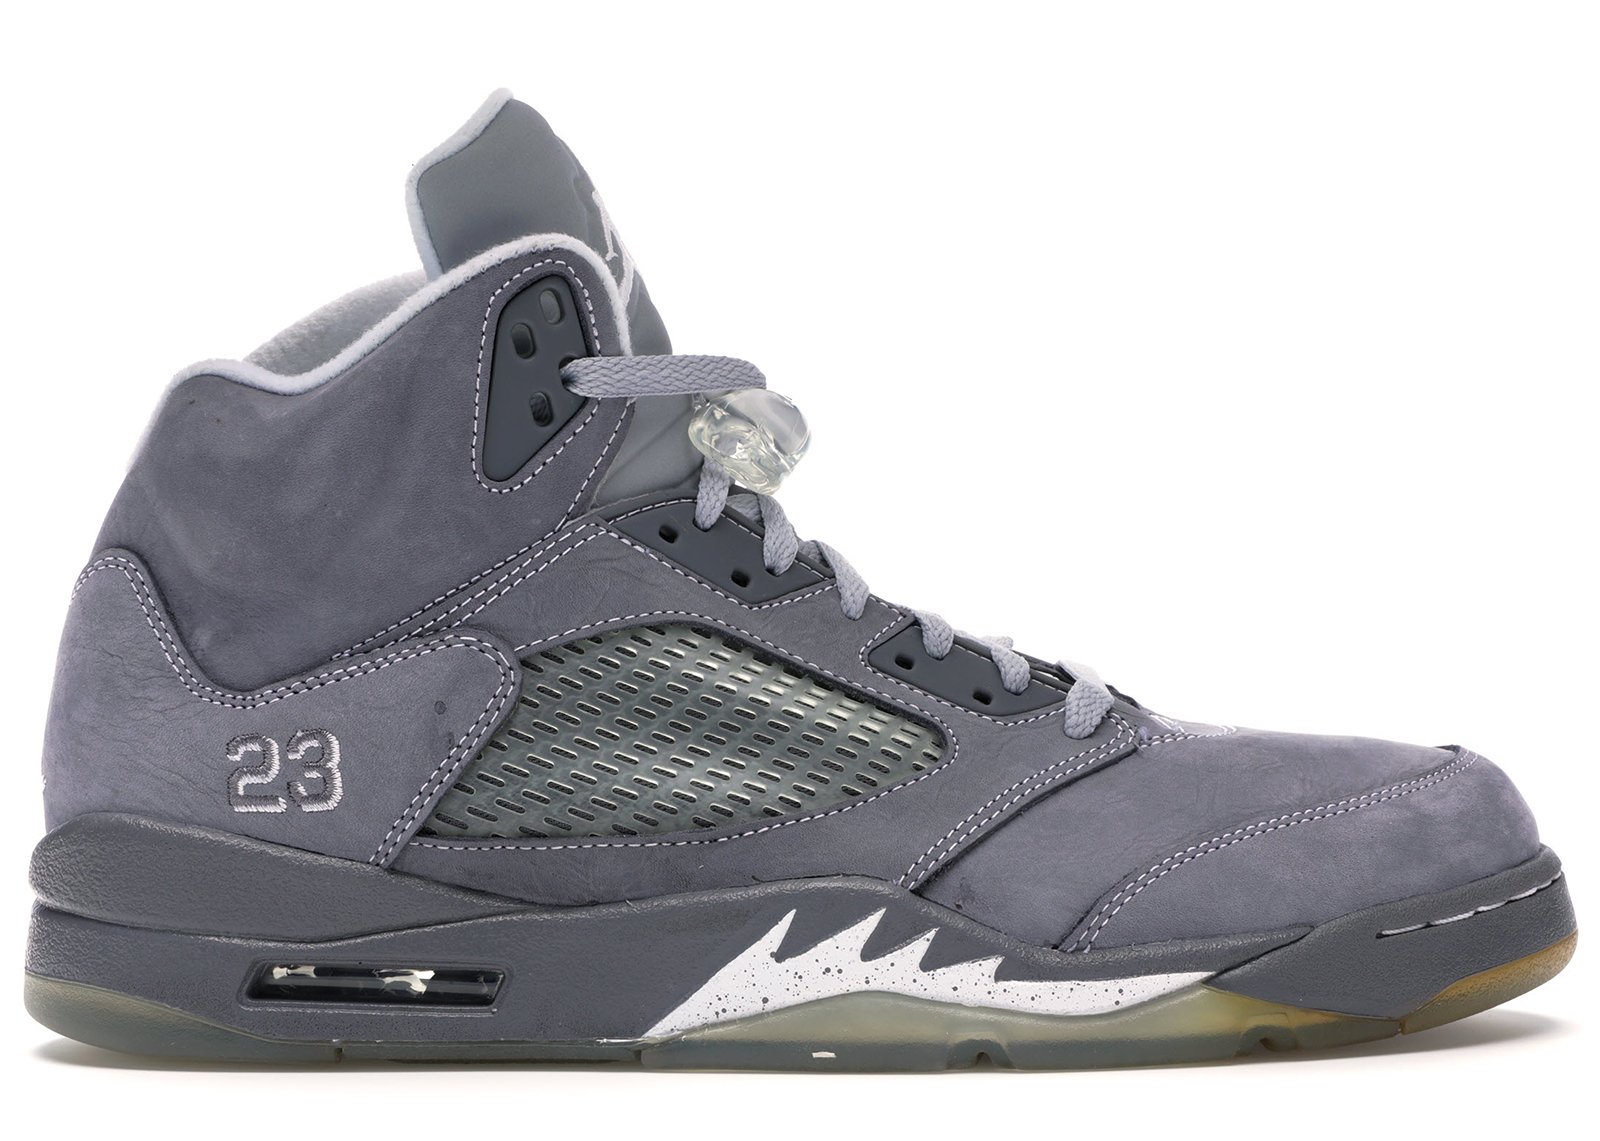 Jordan 5 Retro Wolf Grey sneakers